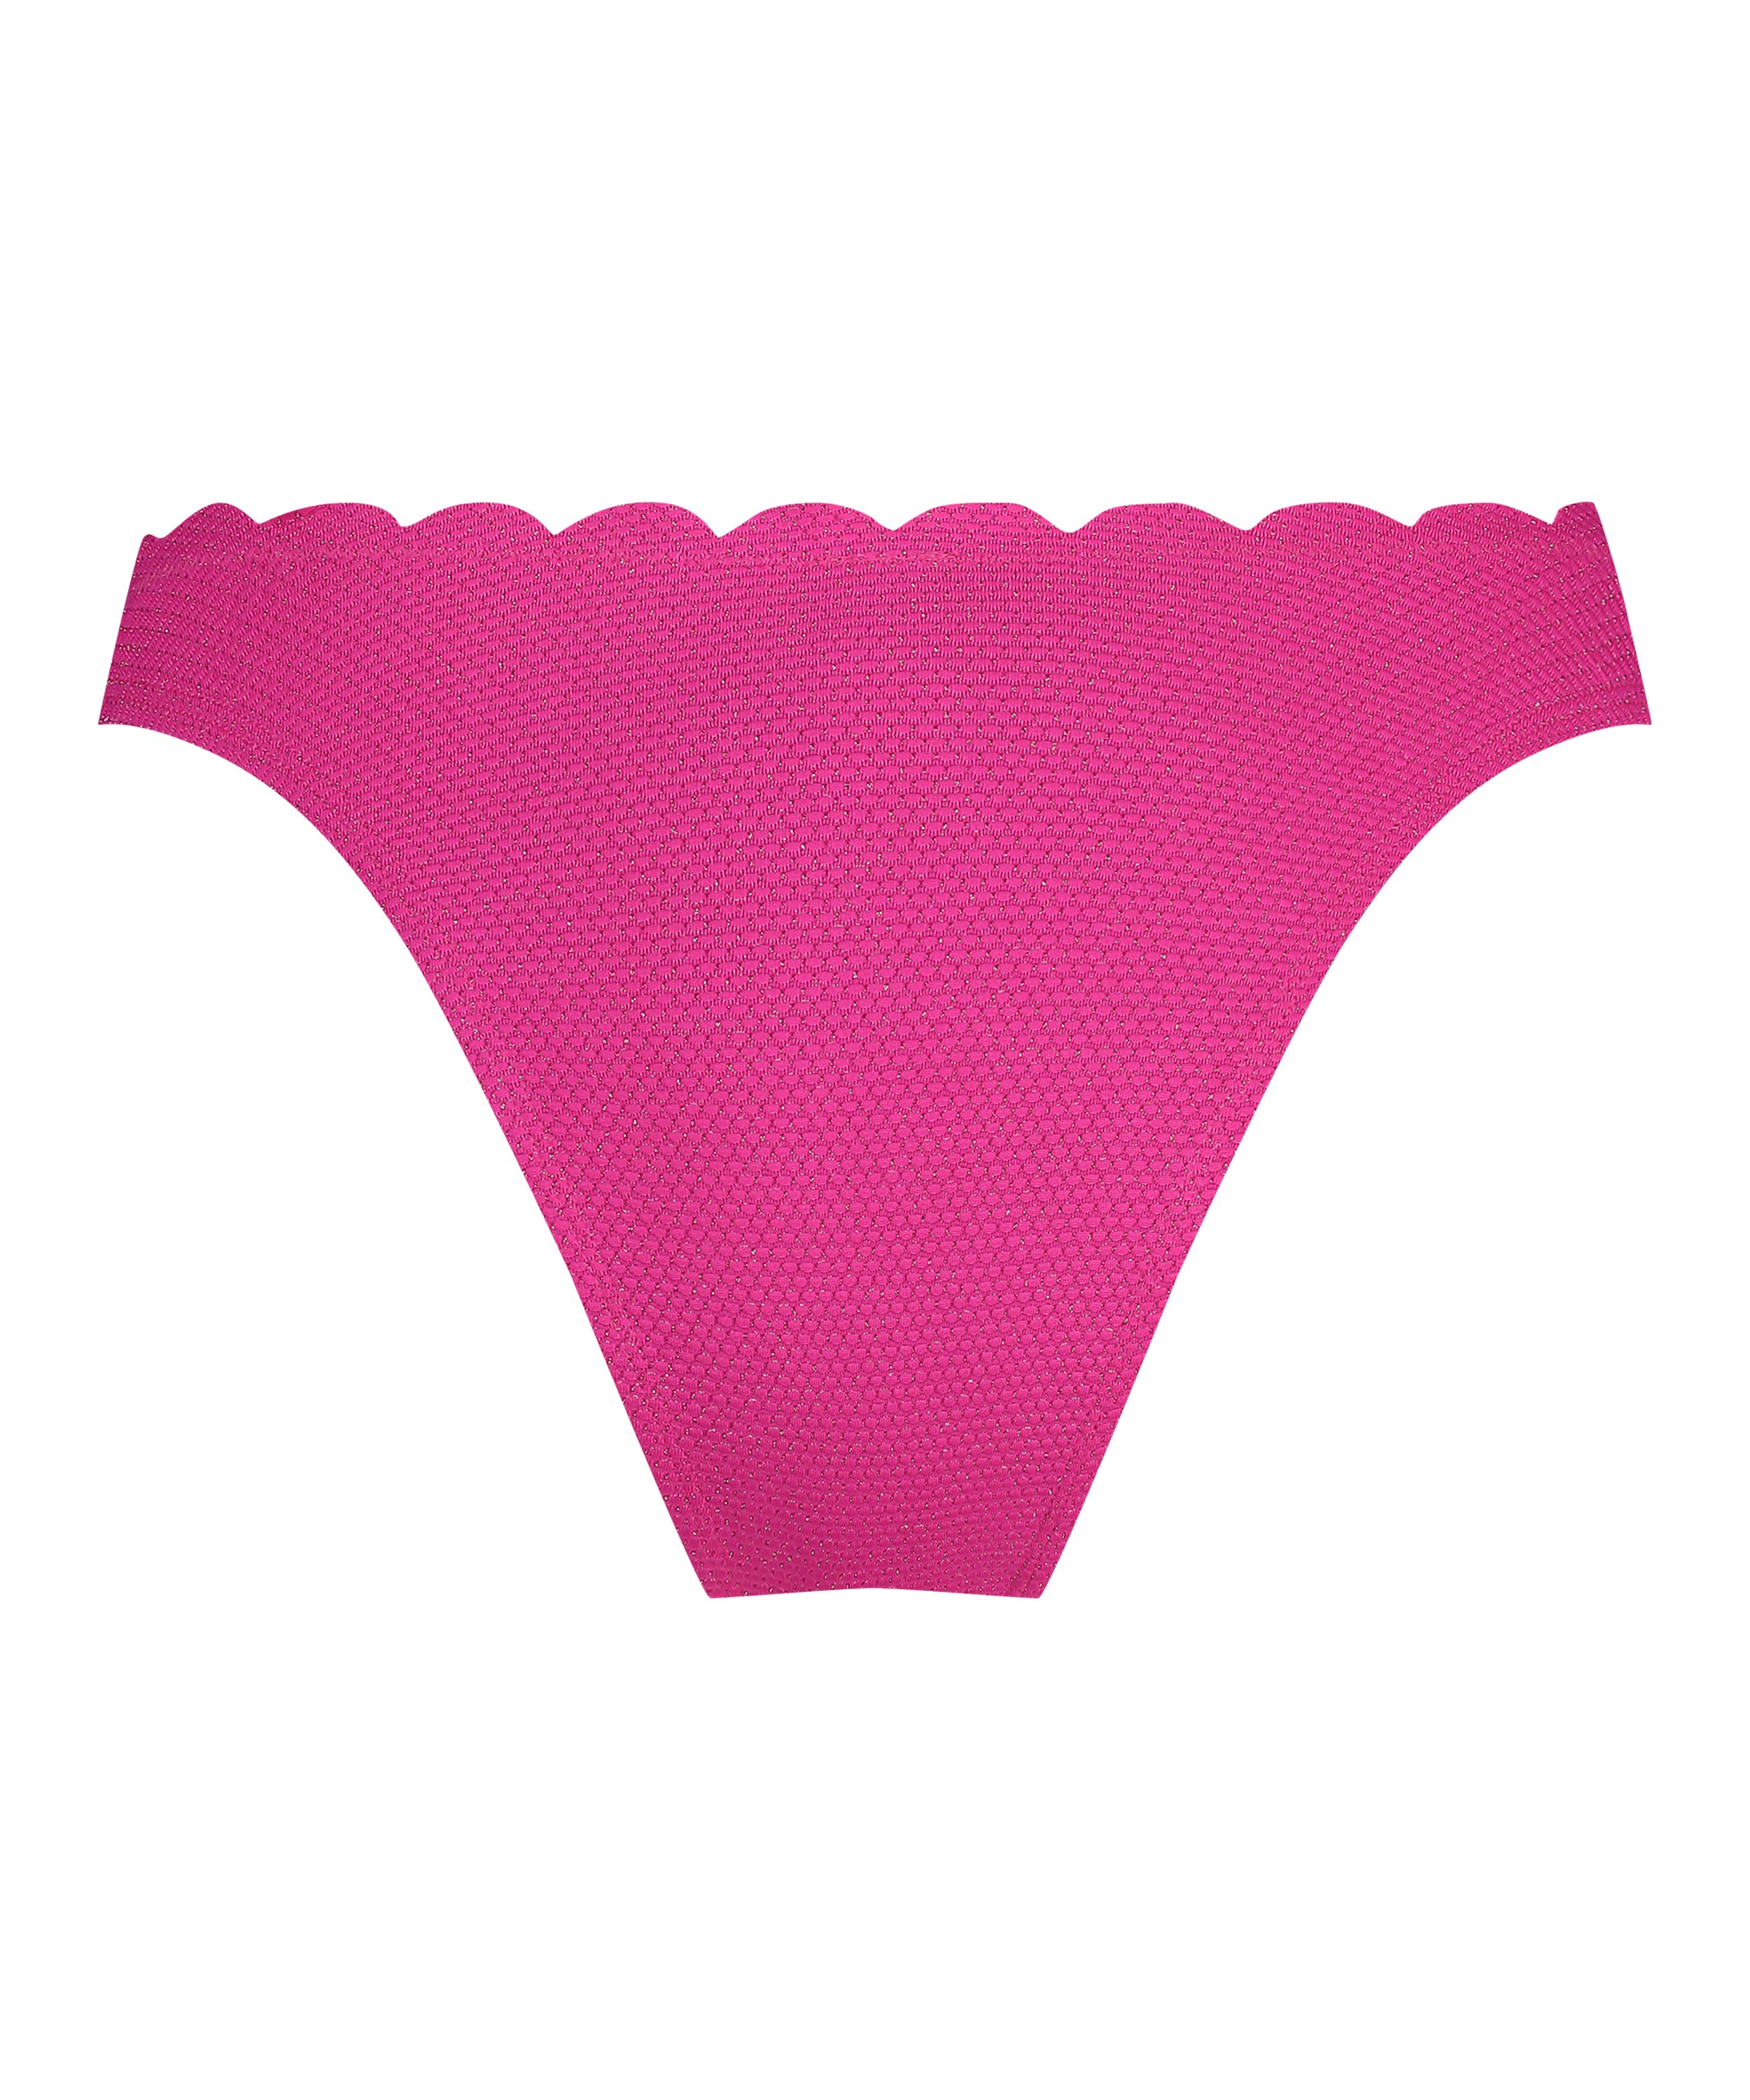 Scallop Lurex High-Leg Bikini Bottoms, Pink, main